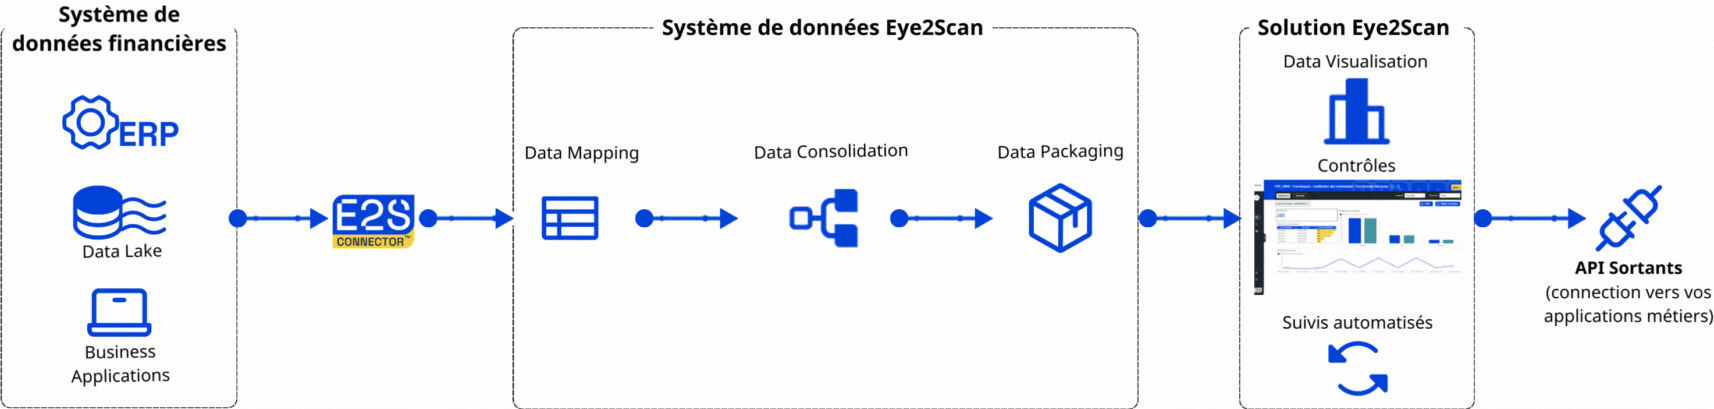 Flux de données de la solution Eye2Scan